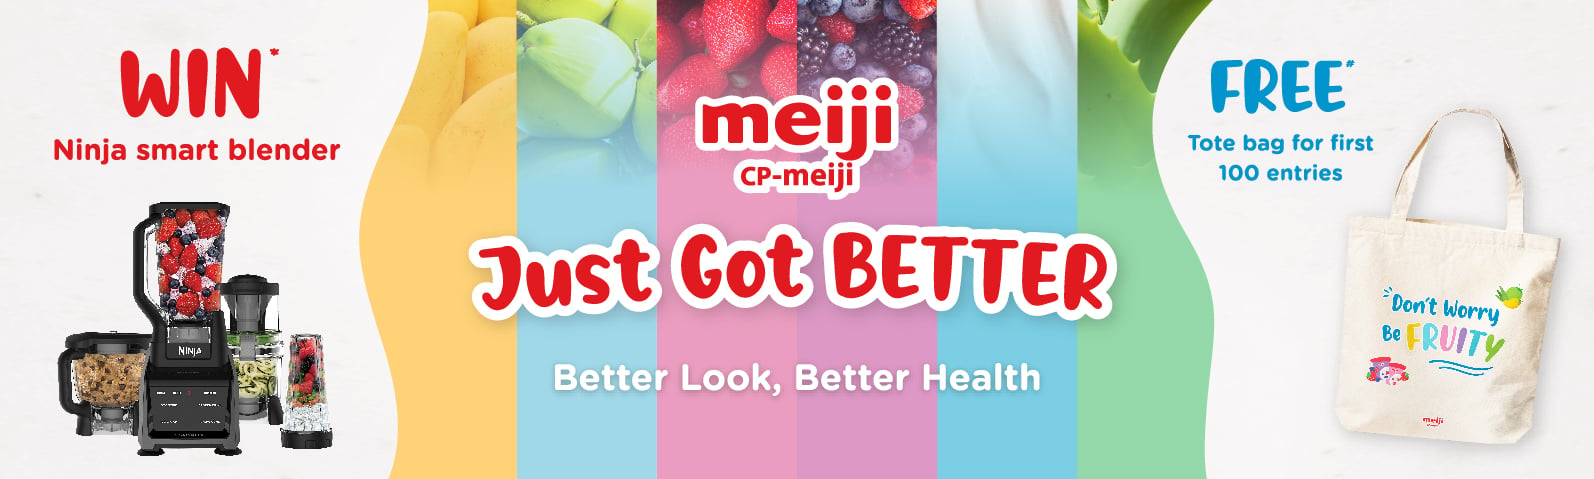 Meiji Yoghurt Spend & Win Giveaway